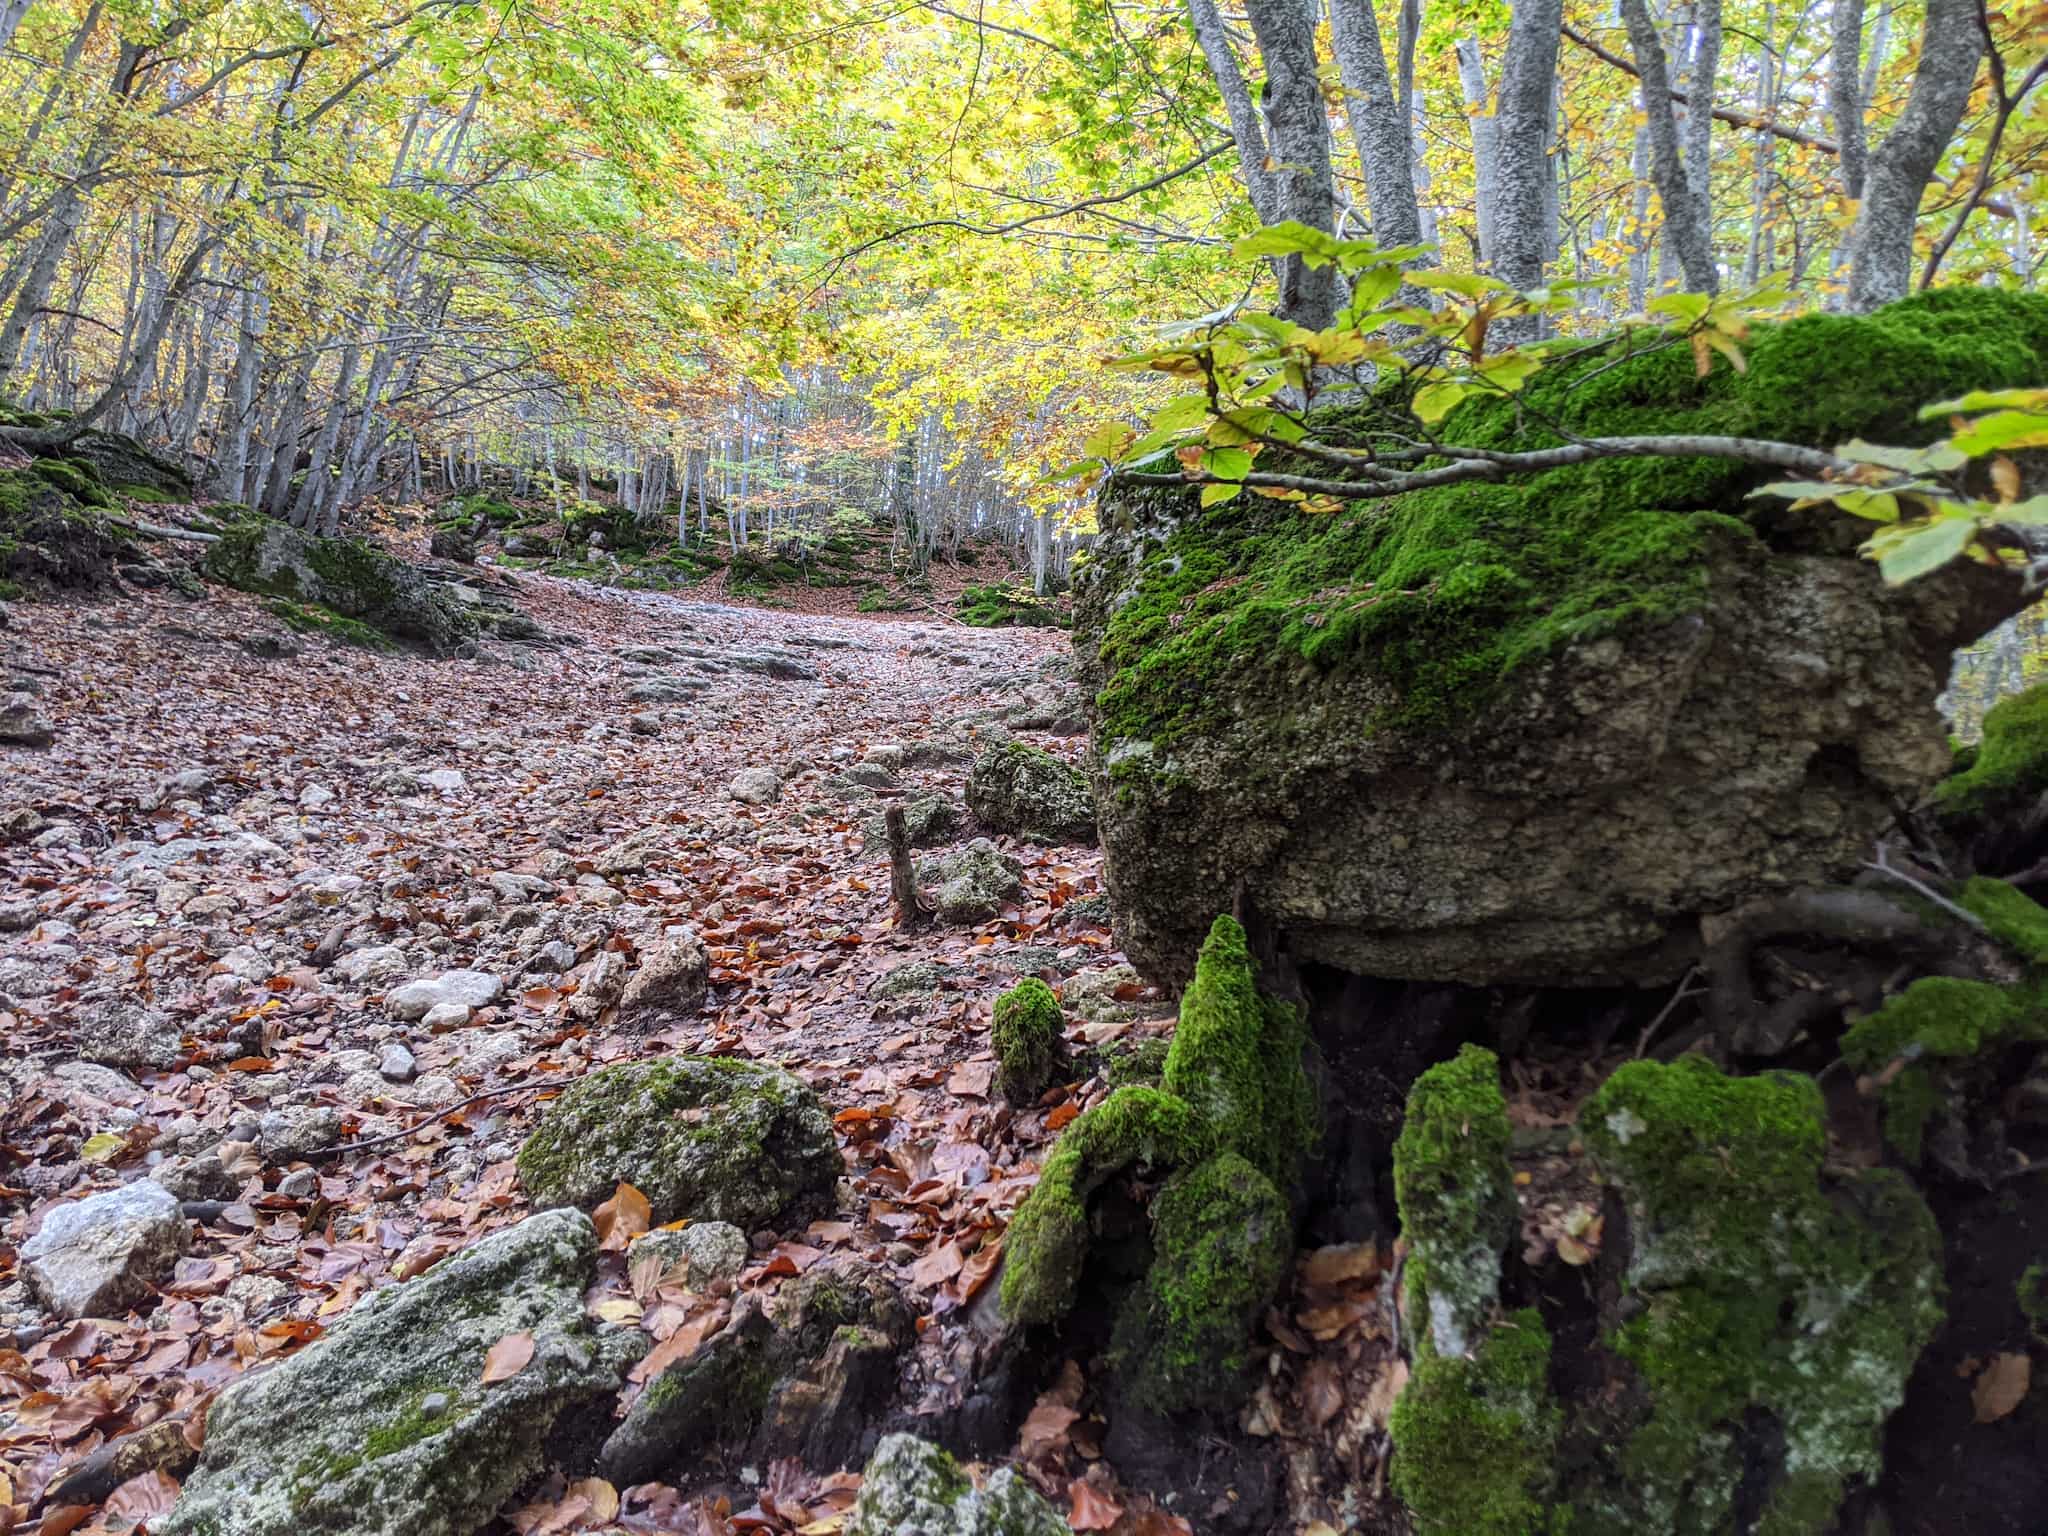 Esperienza fotografica nei boschi tra i magici colori autunnali